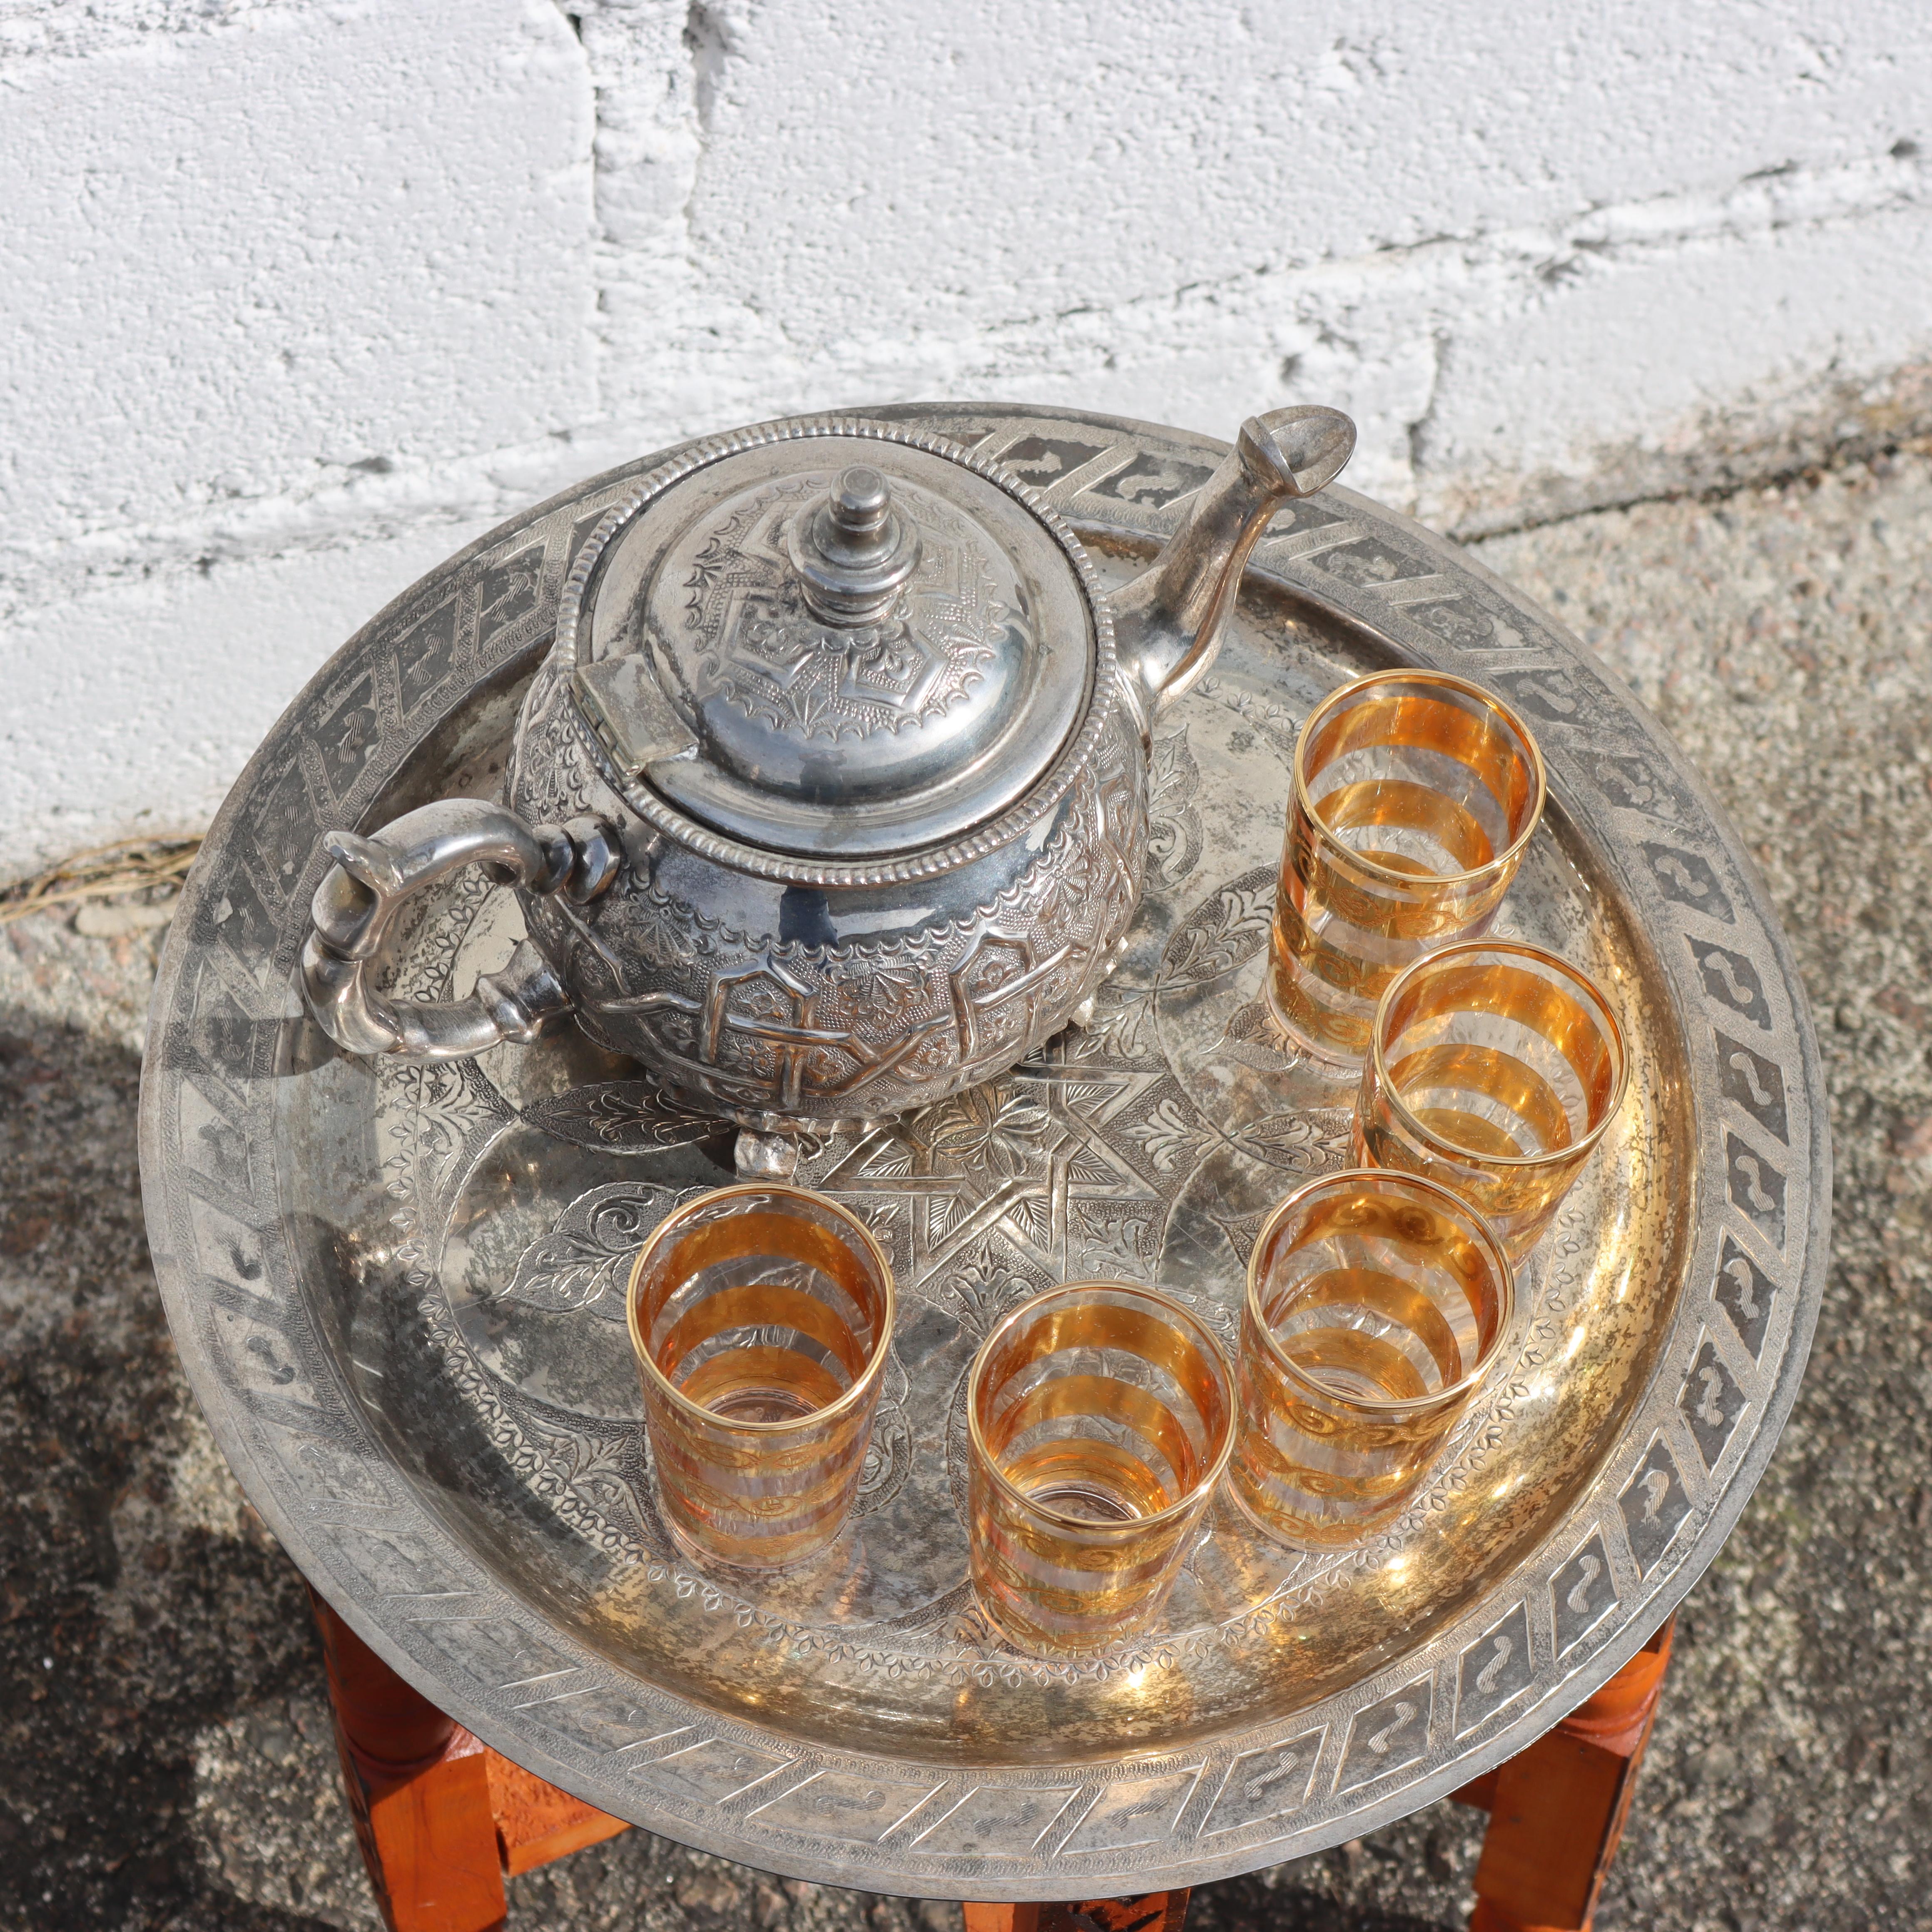 Wunderschöner marokkanischer Teezeremonie-Tisch aus den 80er Jahren

Verschnörkelte massive Tischplatte aus versilbertem Messing mit aufwendig geätzten Motiven.

Der Teller steht auf einem kunstvoll geschnitzten Klappsockel aus sechs Thuja-Beinen